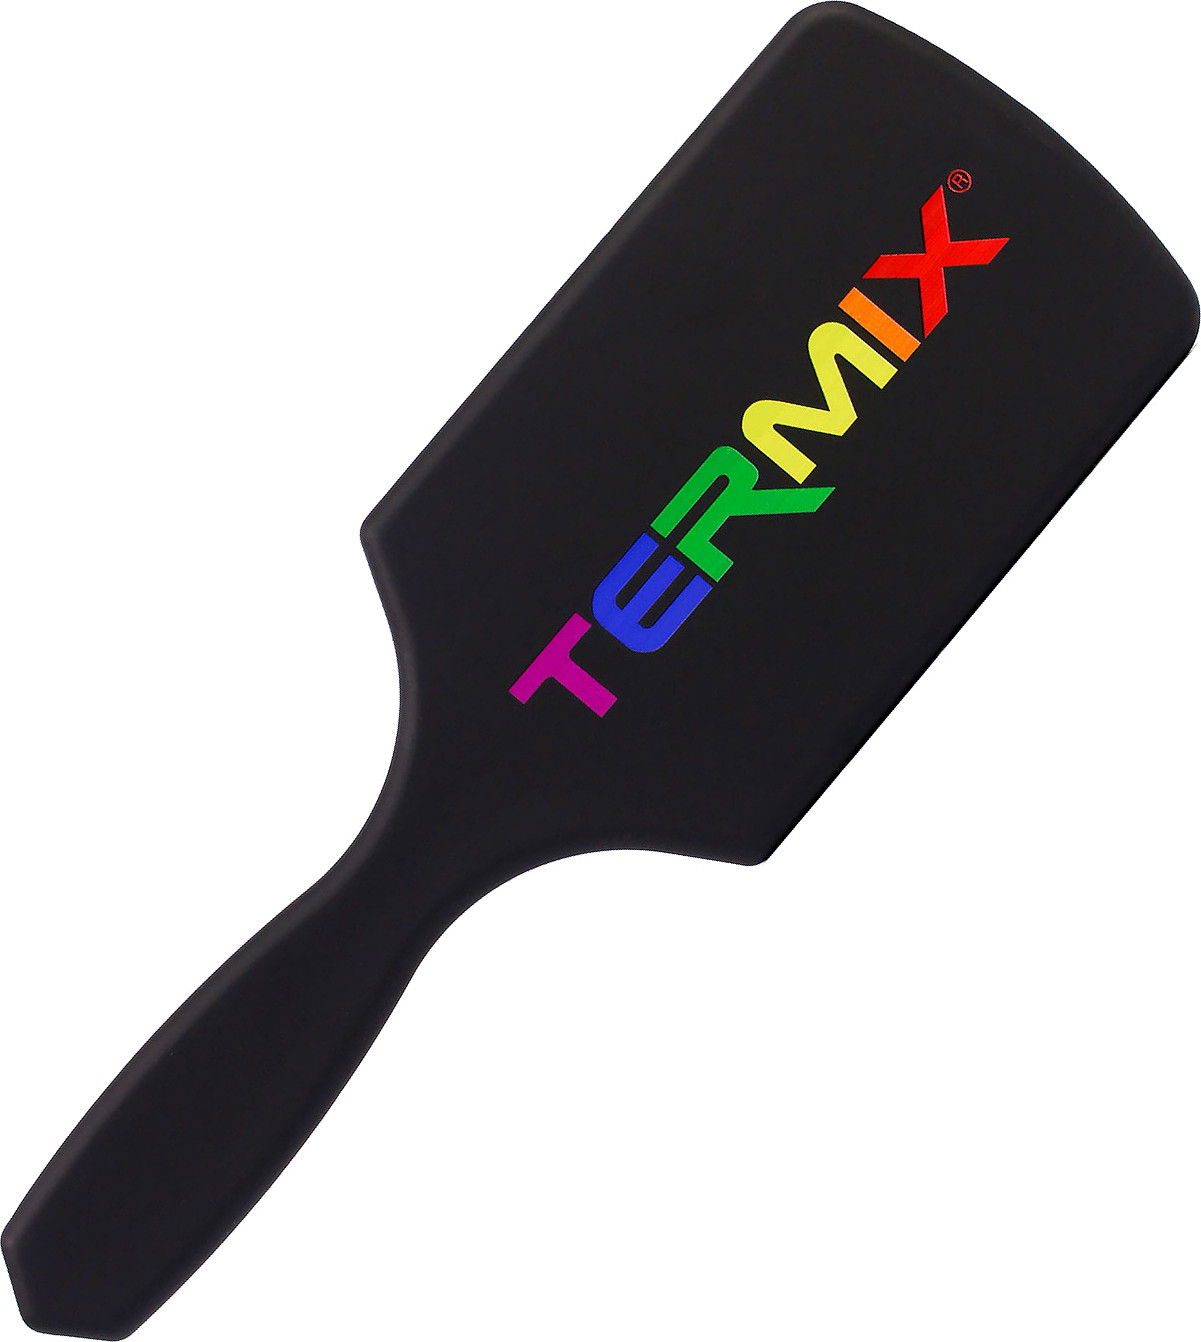  Termix Paddle Brush Pride Edition, noir 